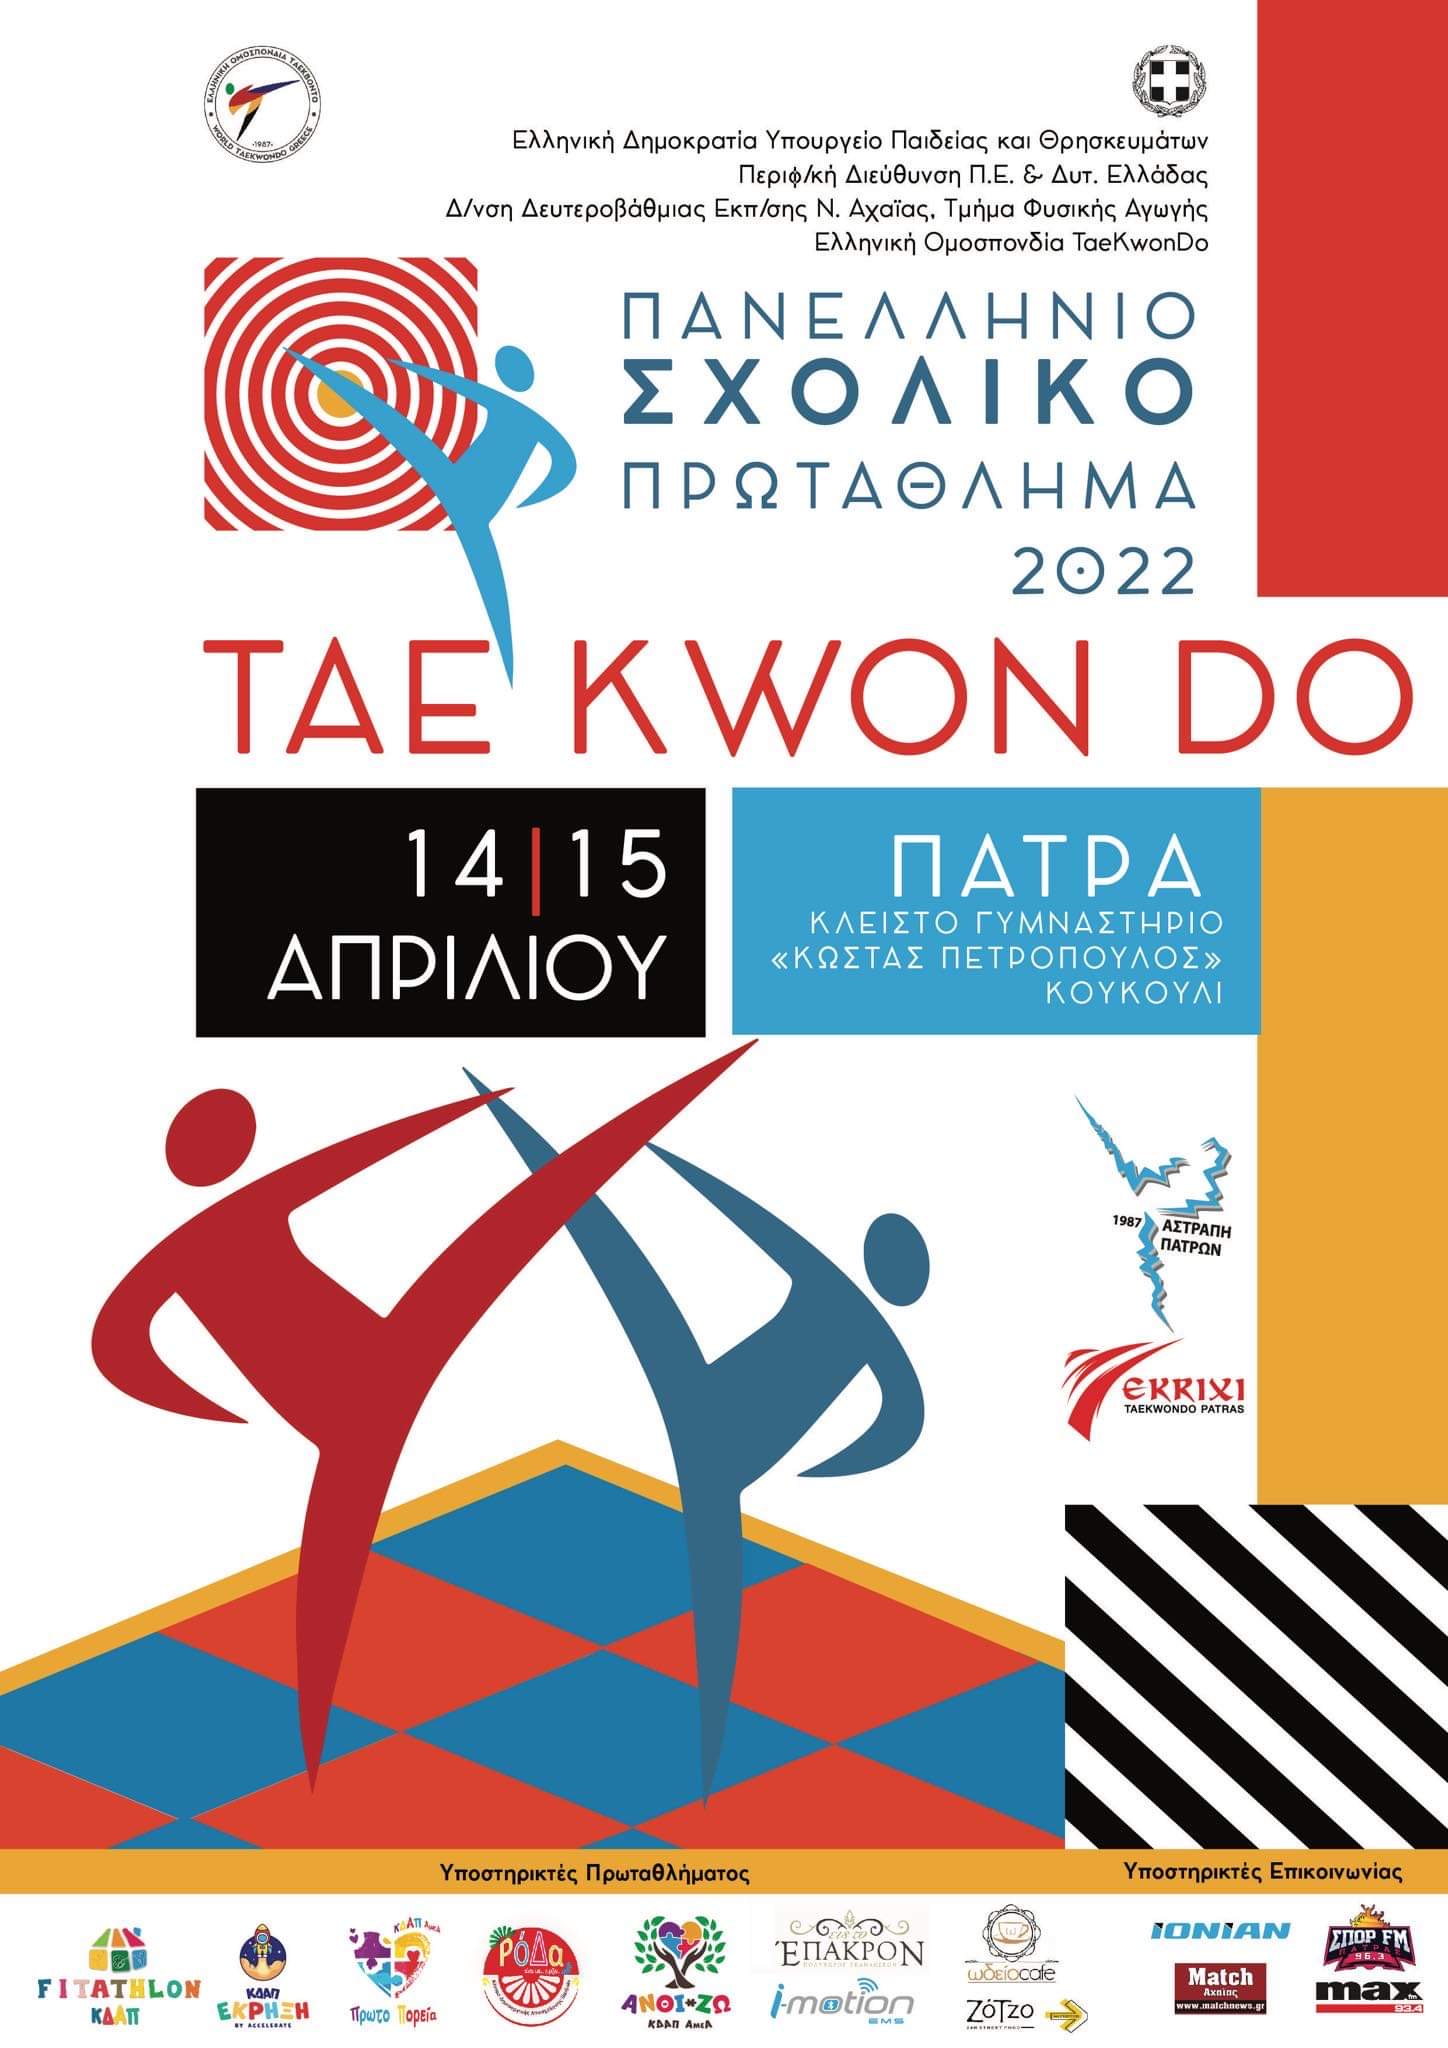 Έρχεται στην Πάτρα το Πανελλήνιο Σχολικό Πρωτάθλημα ΤΑΕ KWON DO!